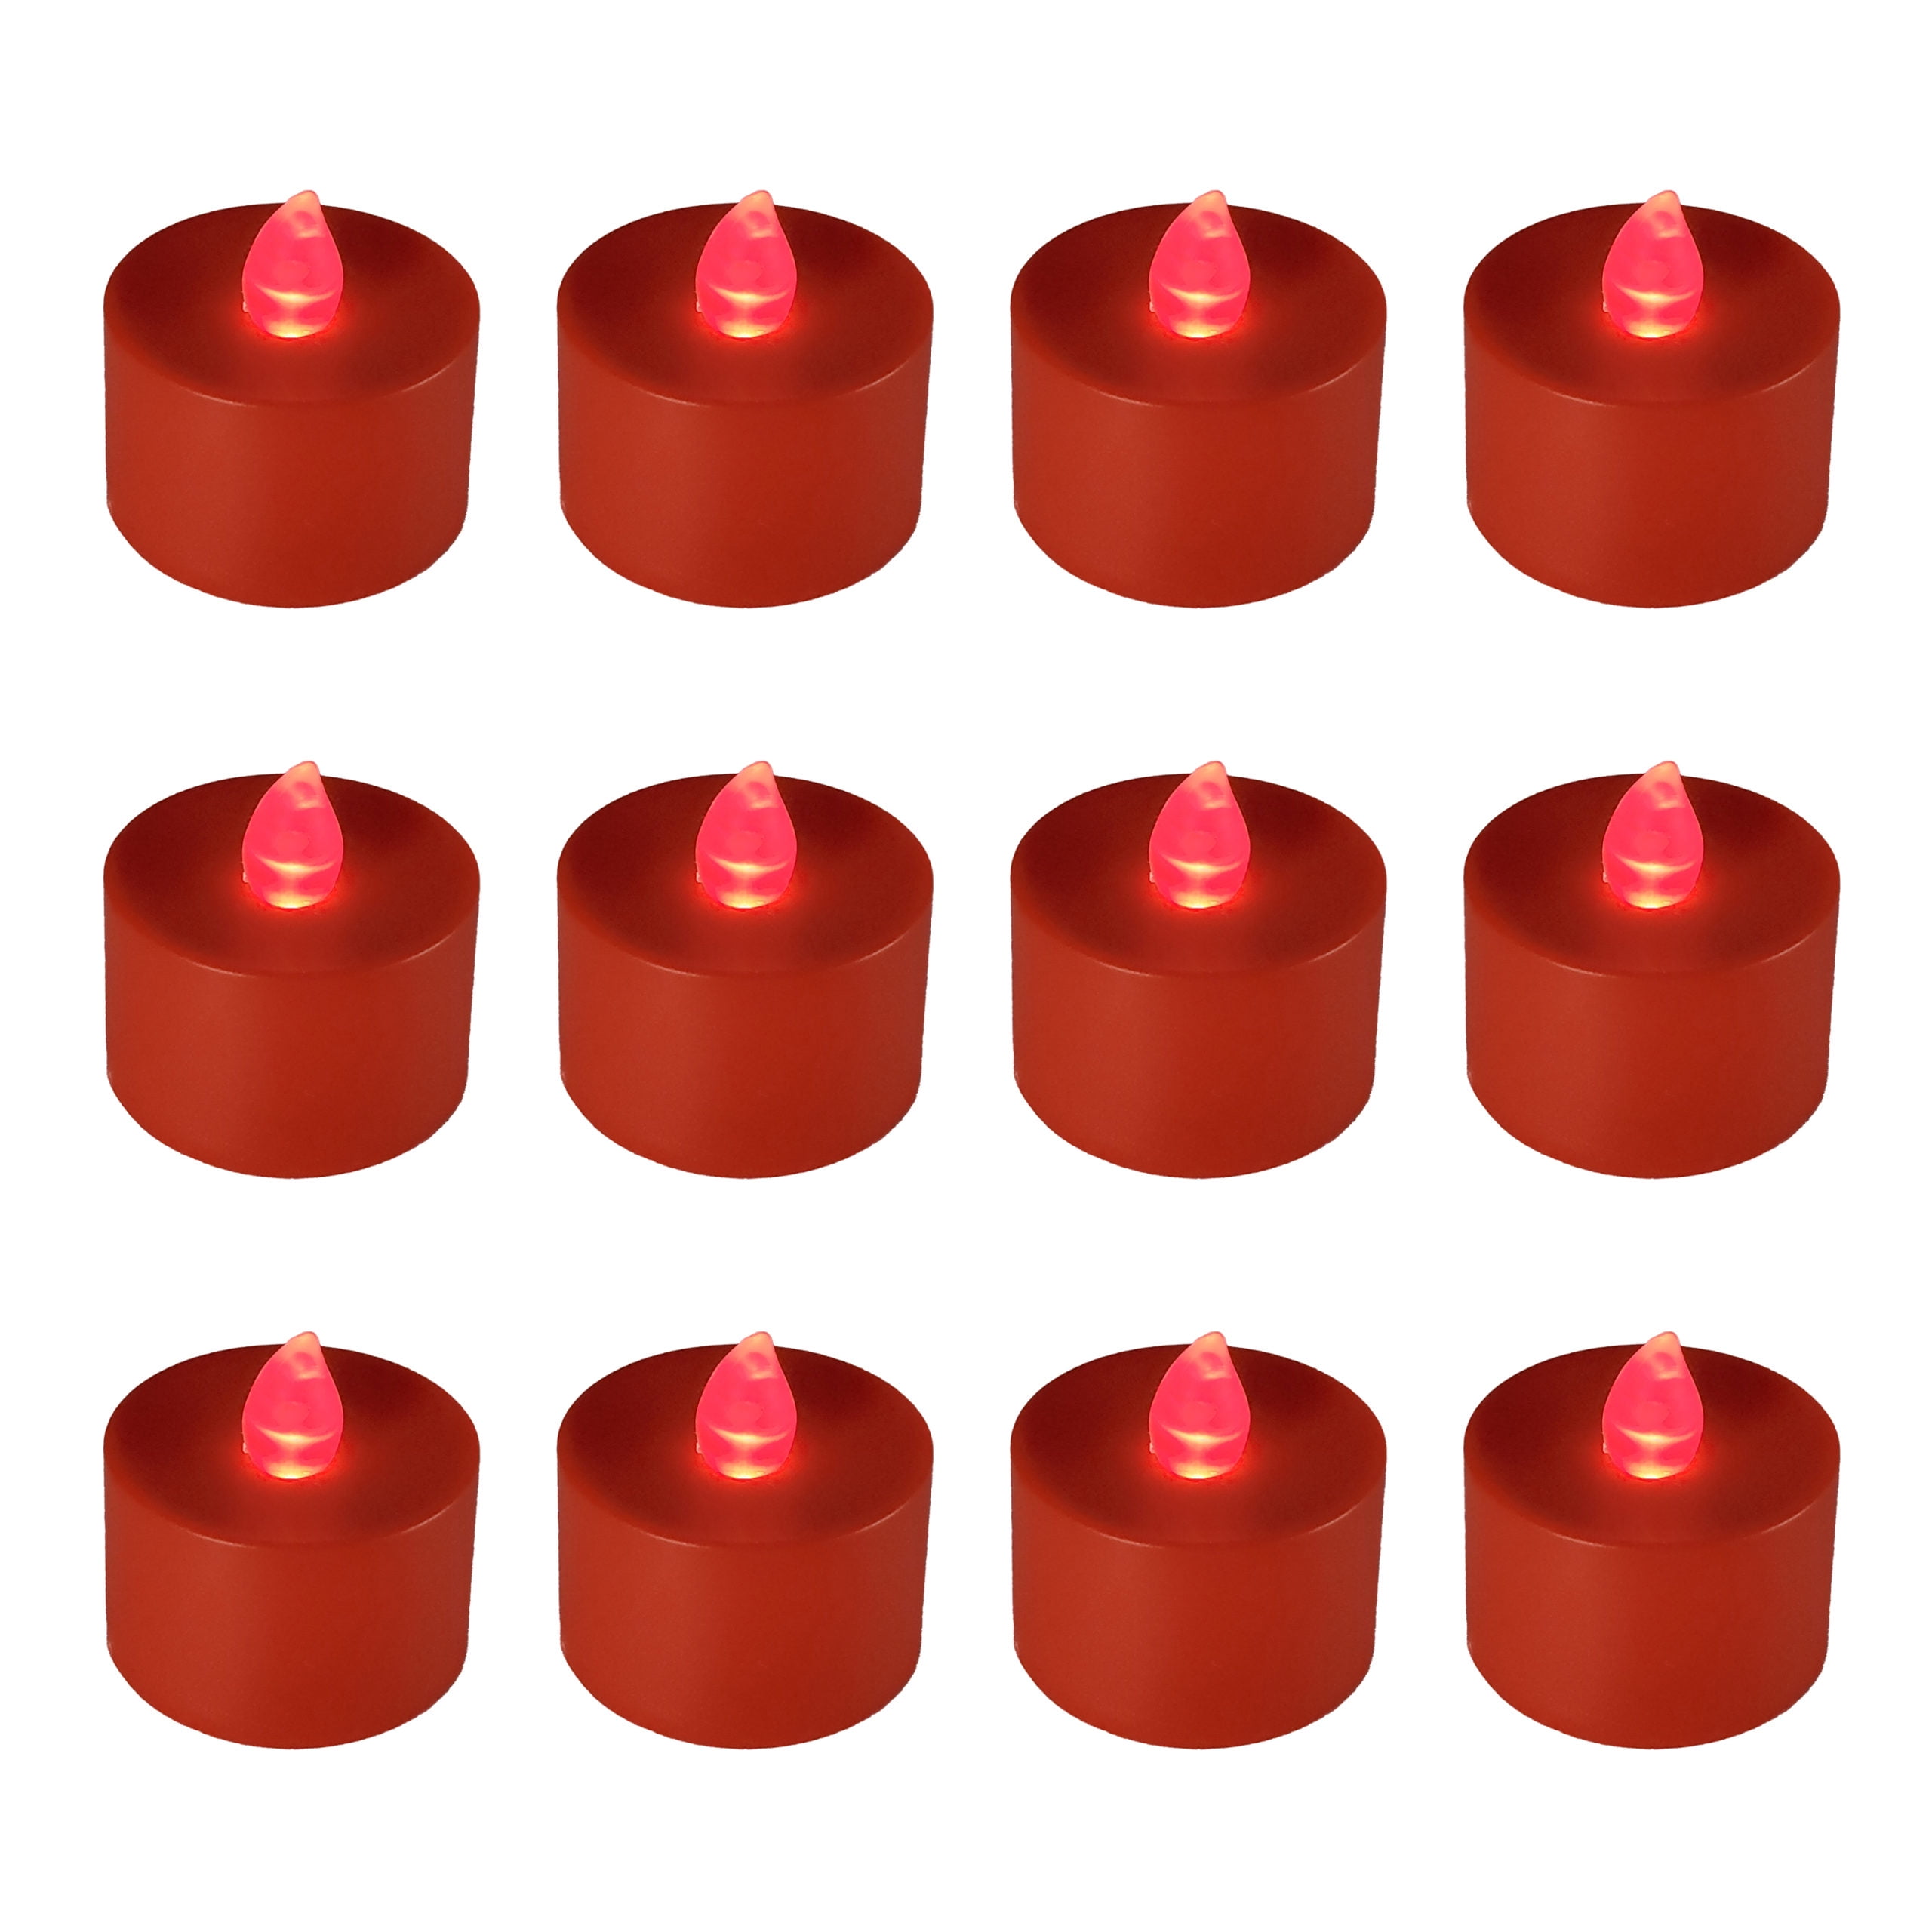 nogle få Kenya Bebrejde Battery Operated Tea Light Candles - Set of 12 (Red) - Walmart.com